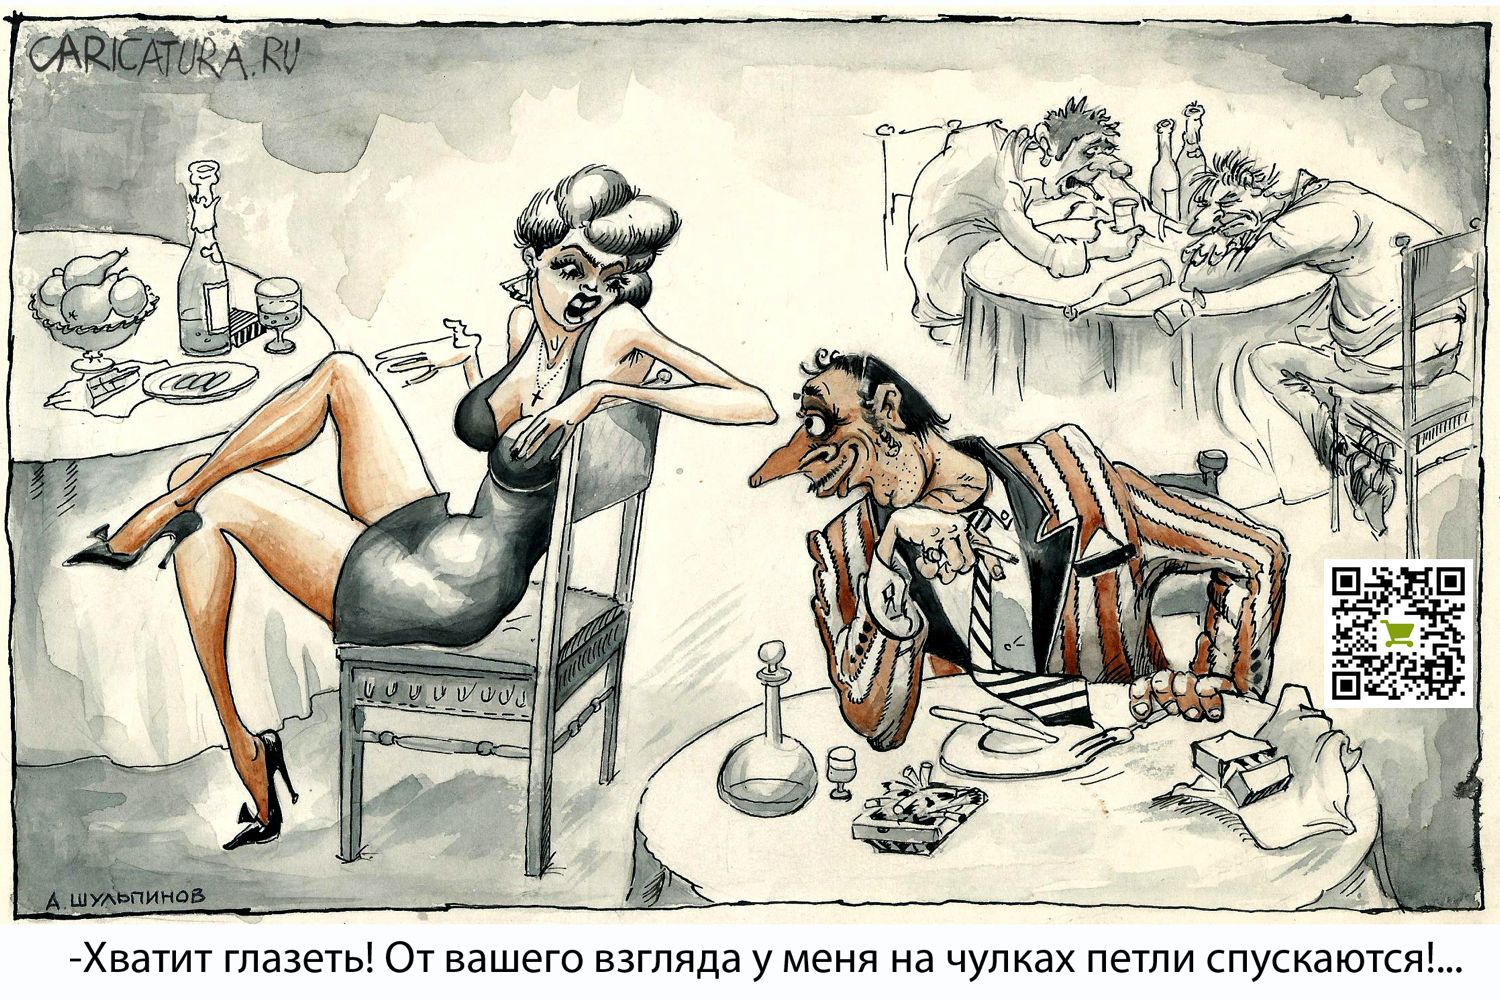 Карикатура "Петли распускаются", Александр Шульпинов